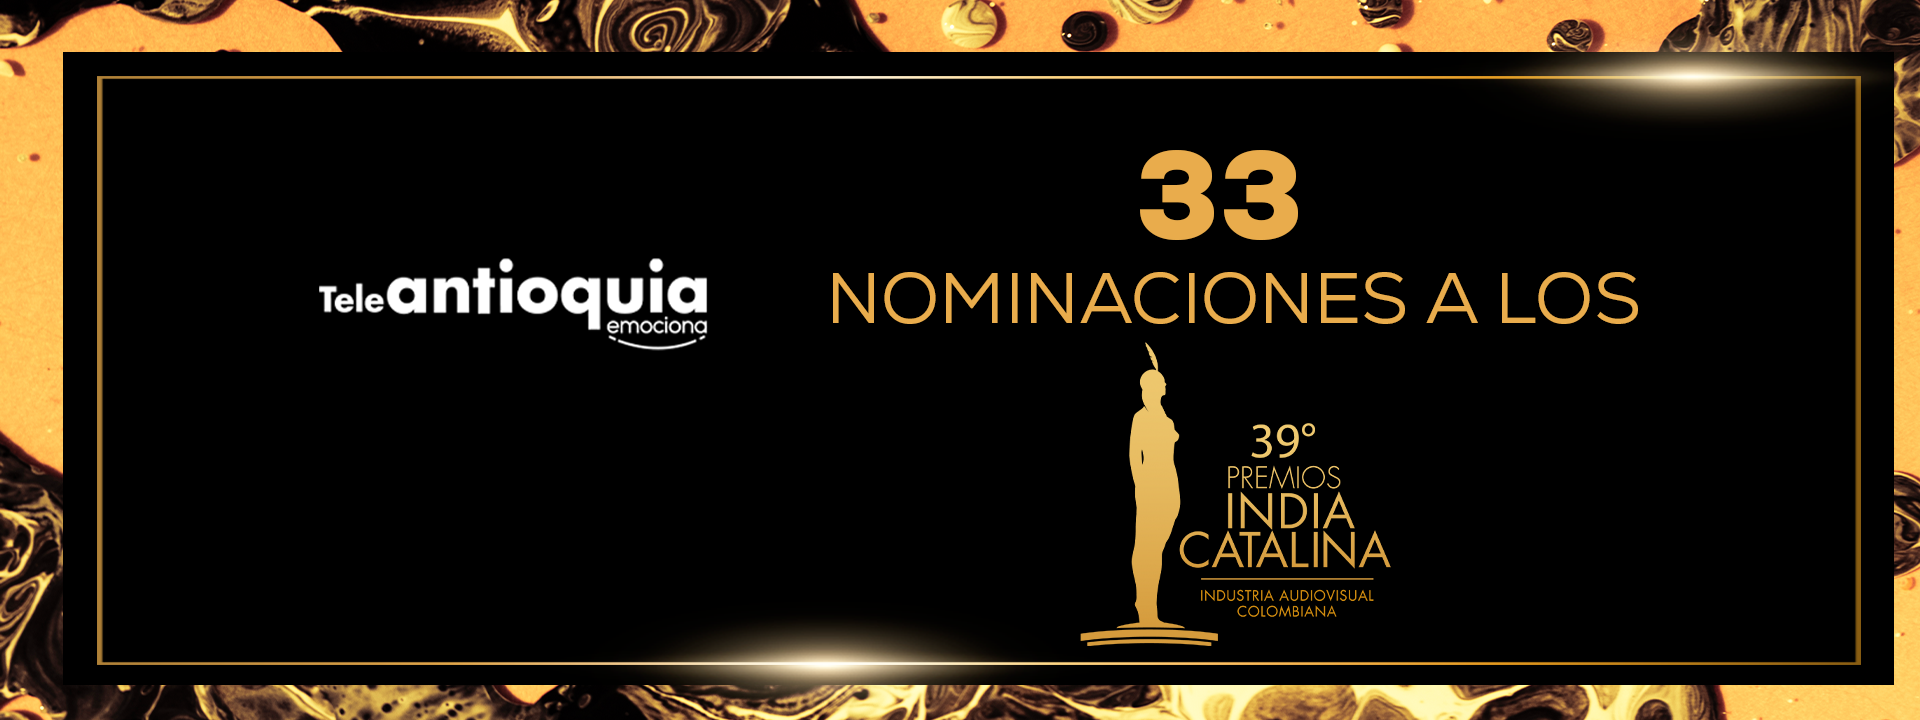 Teleantioquia recibe 33 Nominaciones a los Premios India Catalina